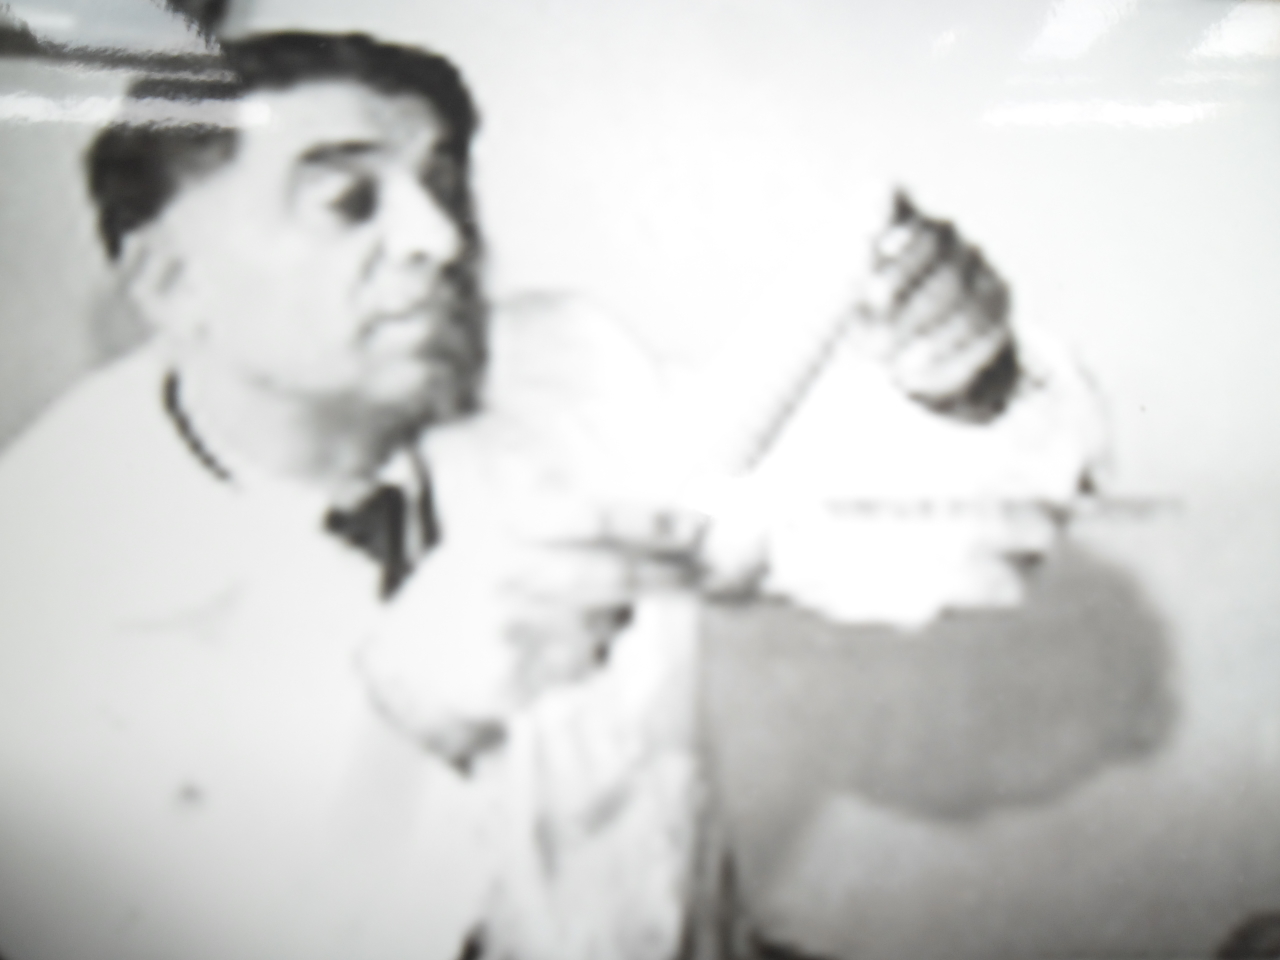 Հրանտ Գևորգի Բատիկյան  (1909-1983 թթ.) -Կենսաբան-գենետիկ, ՀԽՍՀ գիտության վաստակավոր գործիչ, կենսաբանական գիտությունների դոկտոր, պրոֆեսոր